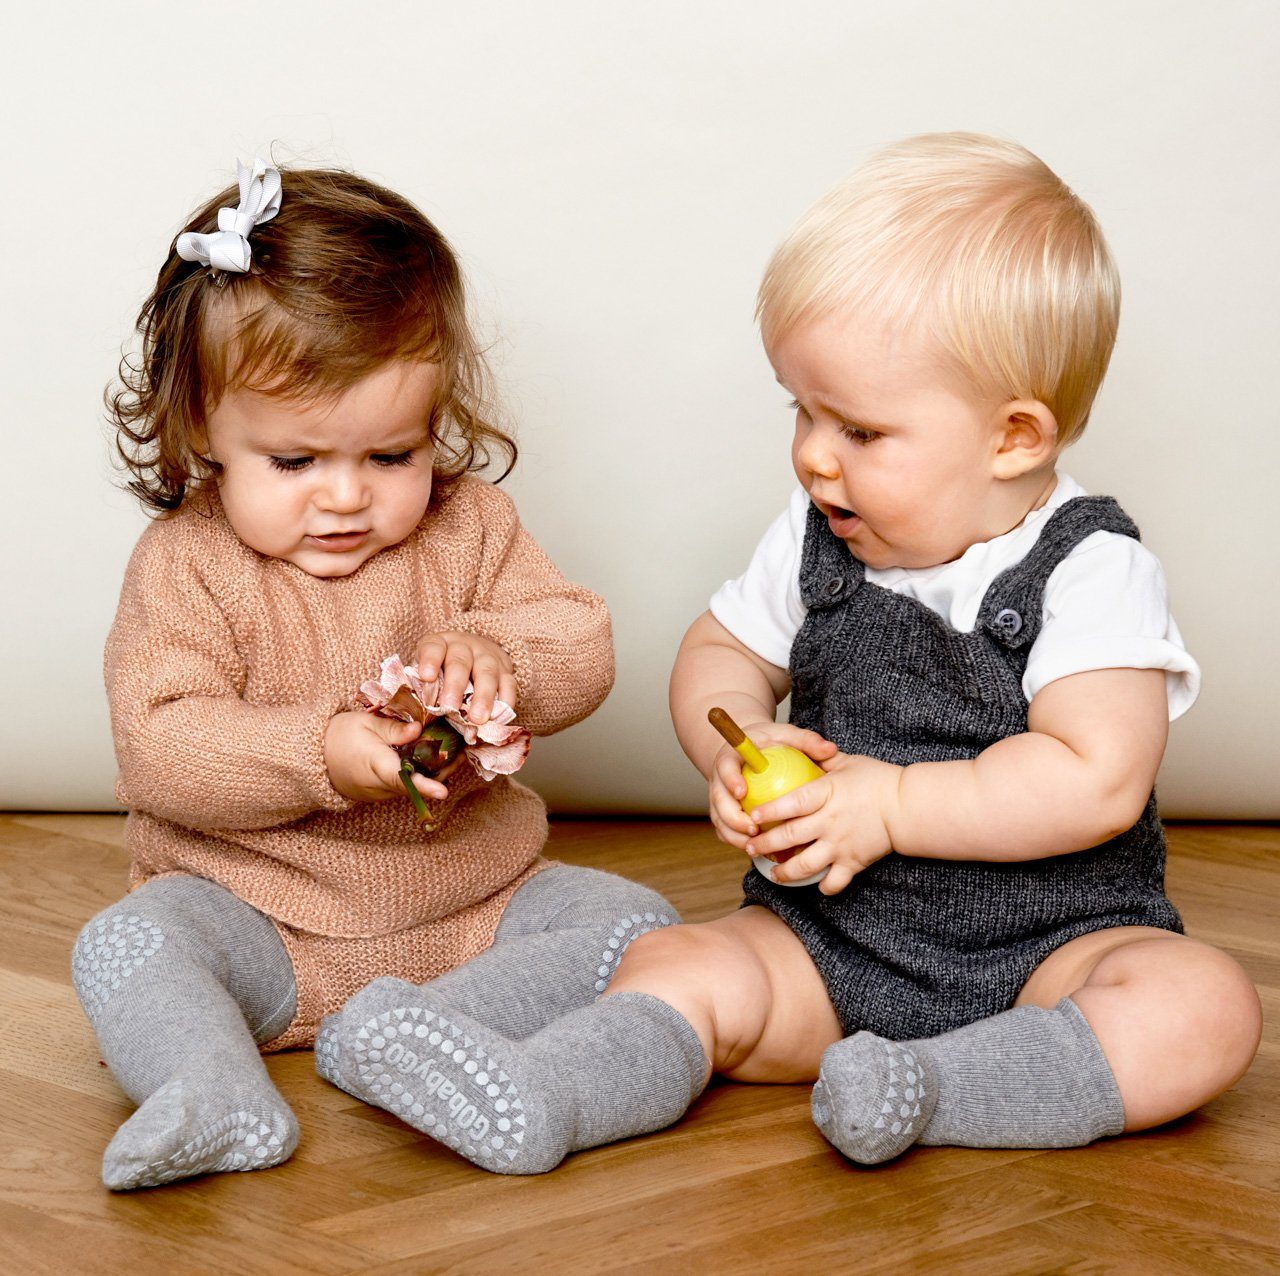 GoBabyGo ABS-Socken Kinder Stoppersocken (Grey Noppen mit Melange) Rutschfeste Gummi Socken antirutsch Baby - Krabbel Strümpfe - Kleinkinder